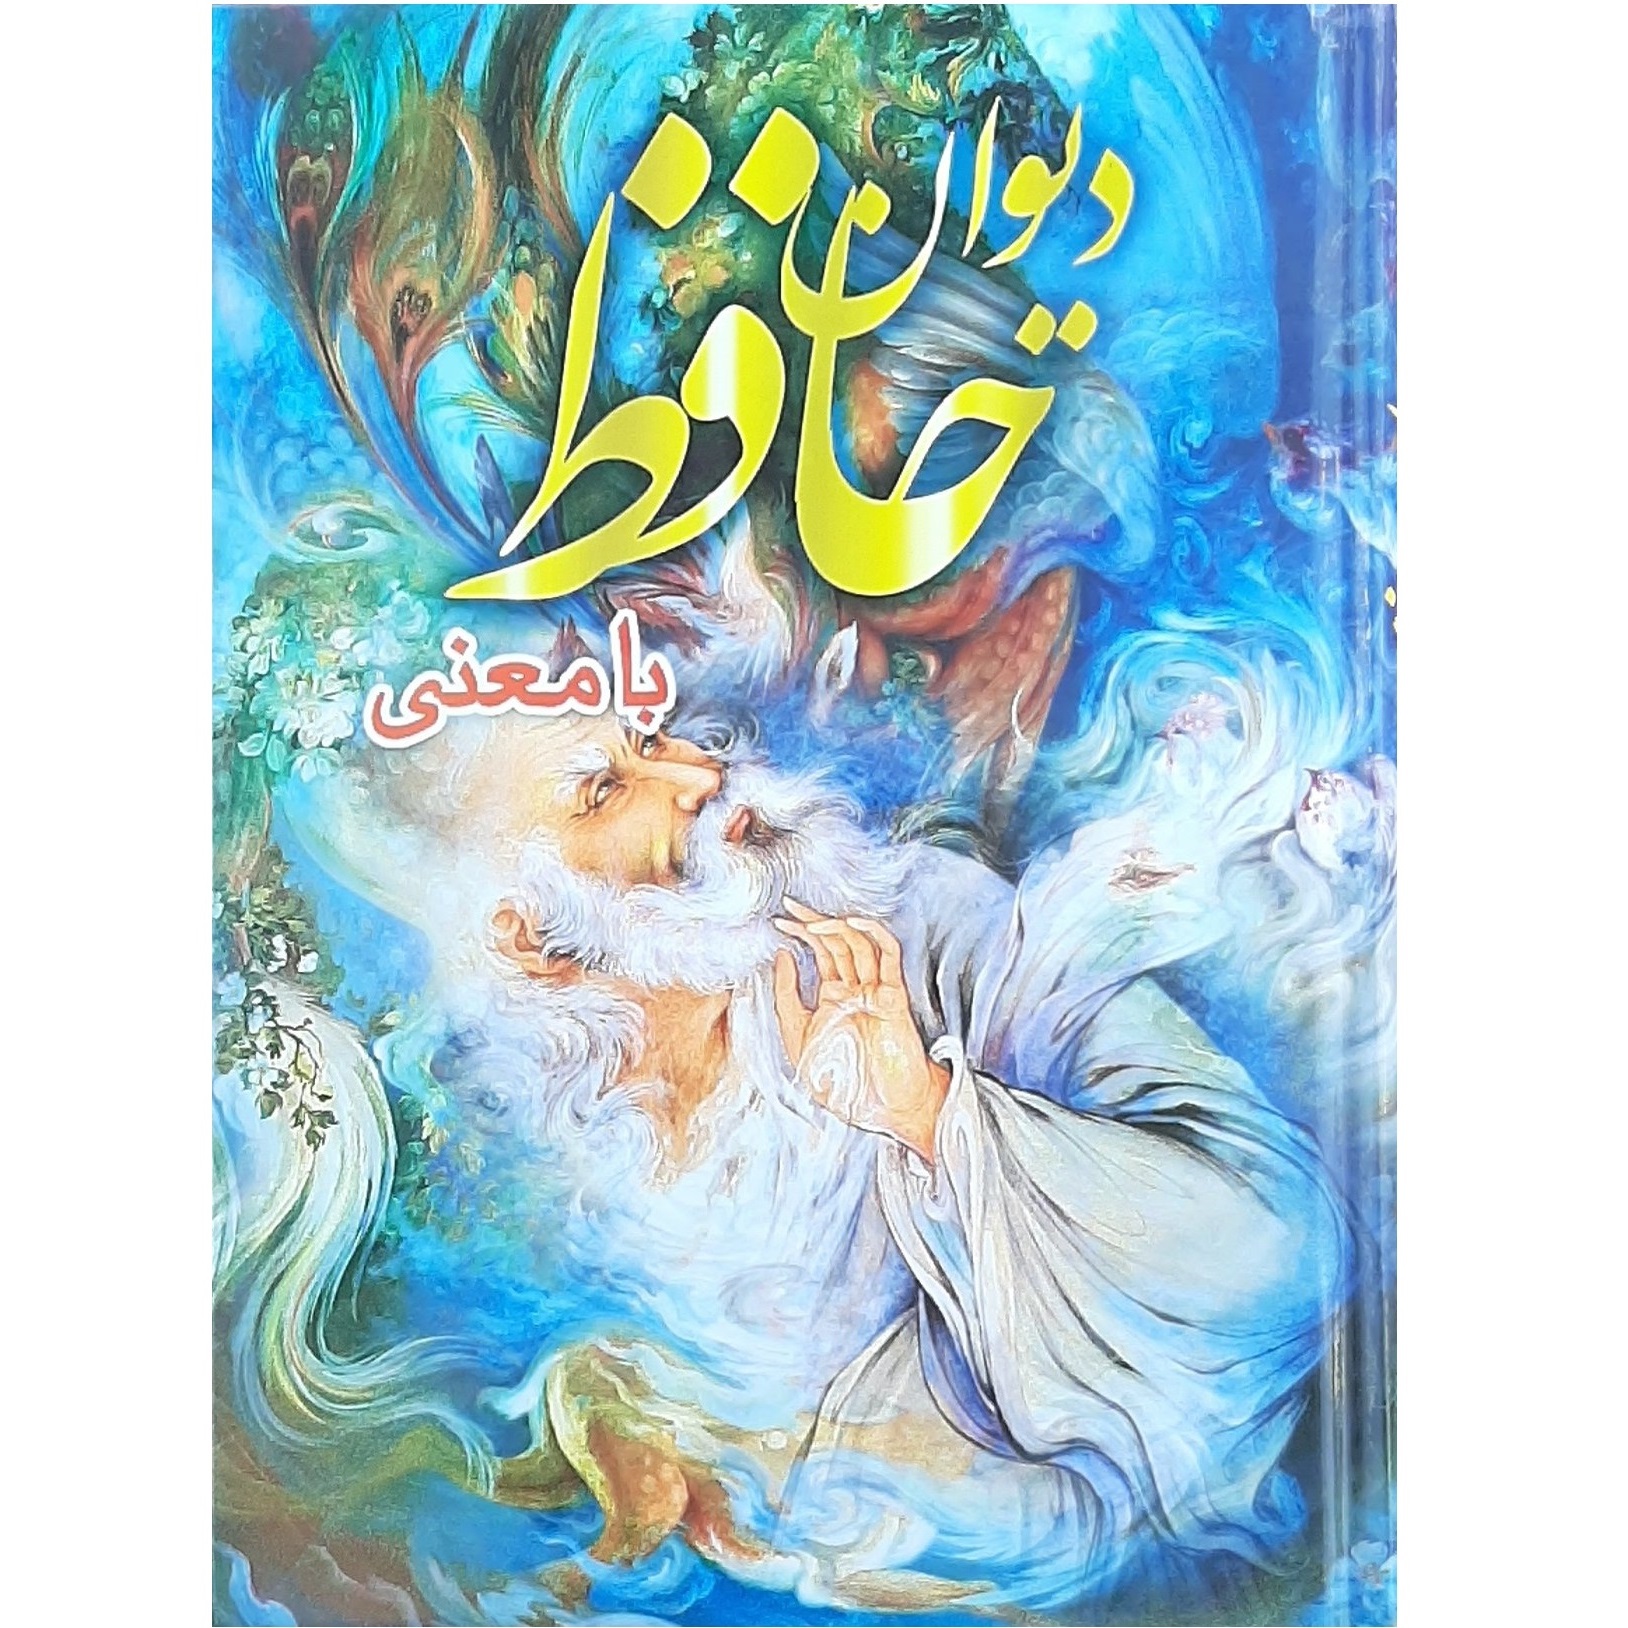 کتاب دیوان حاففظ با معنی انتشارات اسماء الزهرا